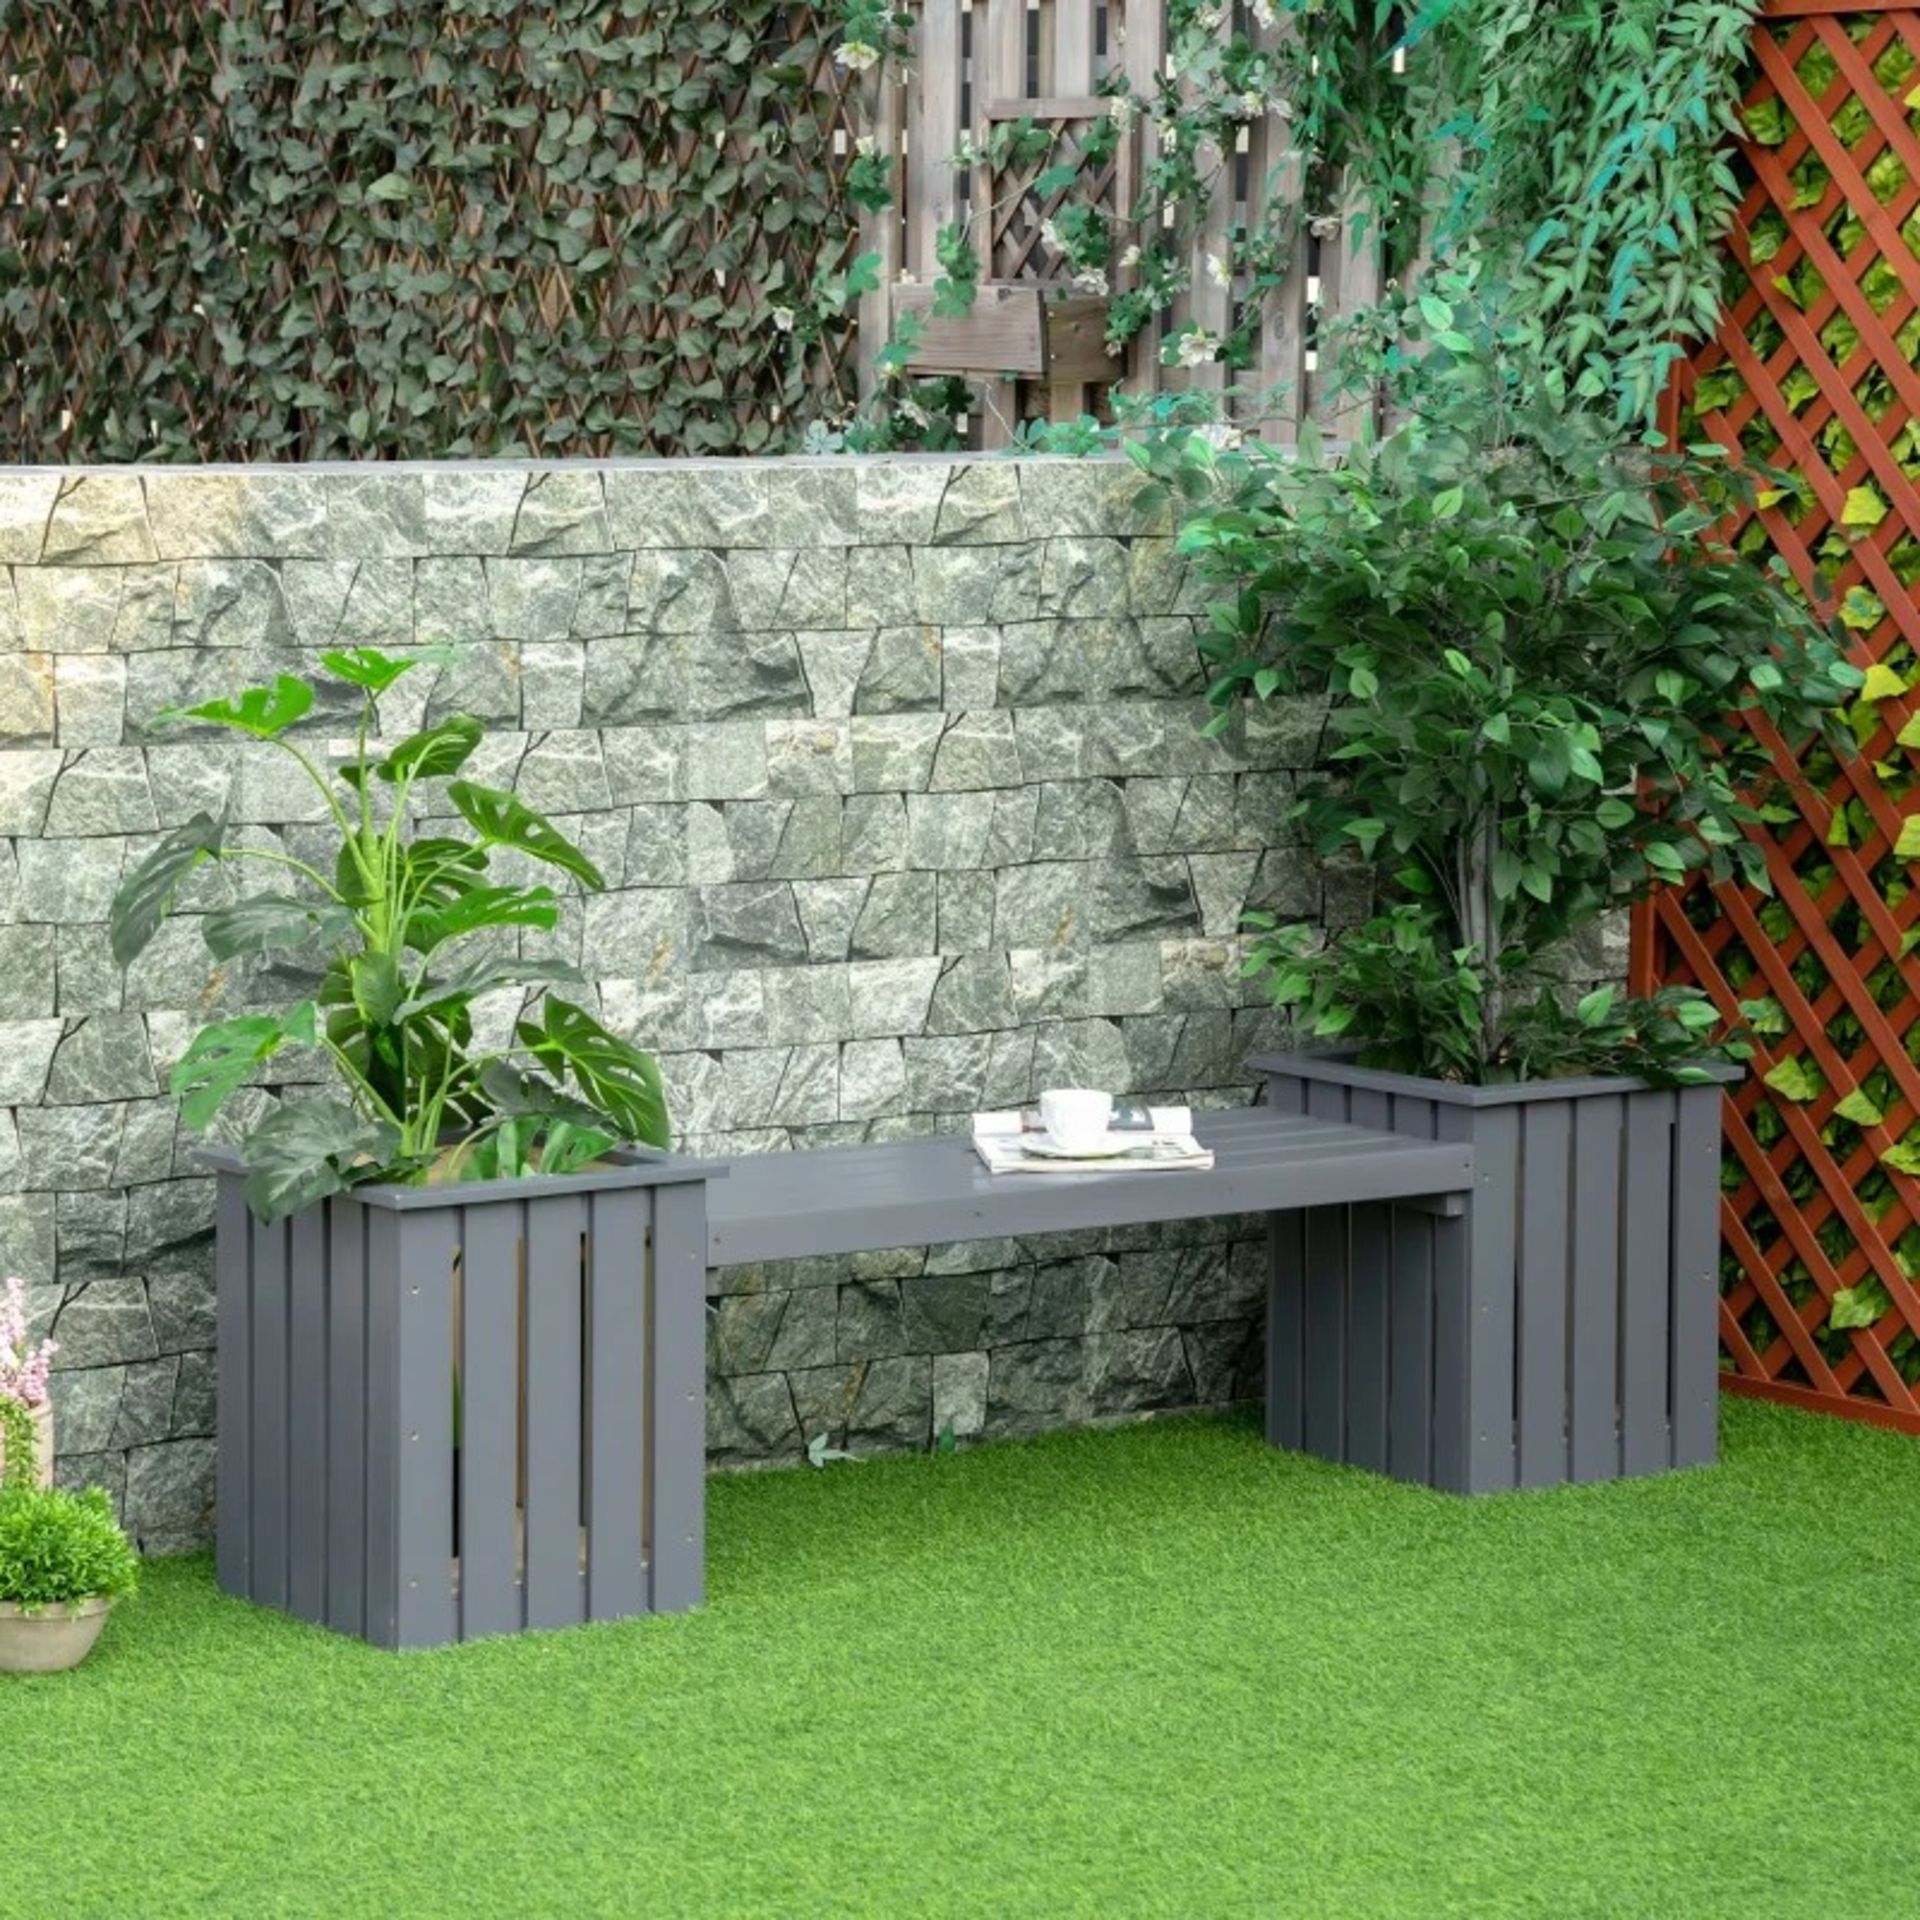 RRP £119.99 - 2 Seater Wooden Garden Planter & Bench Combination, Planter Box with Garden Bench